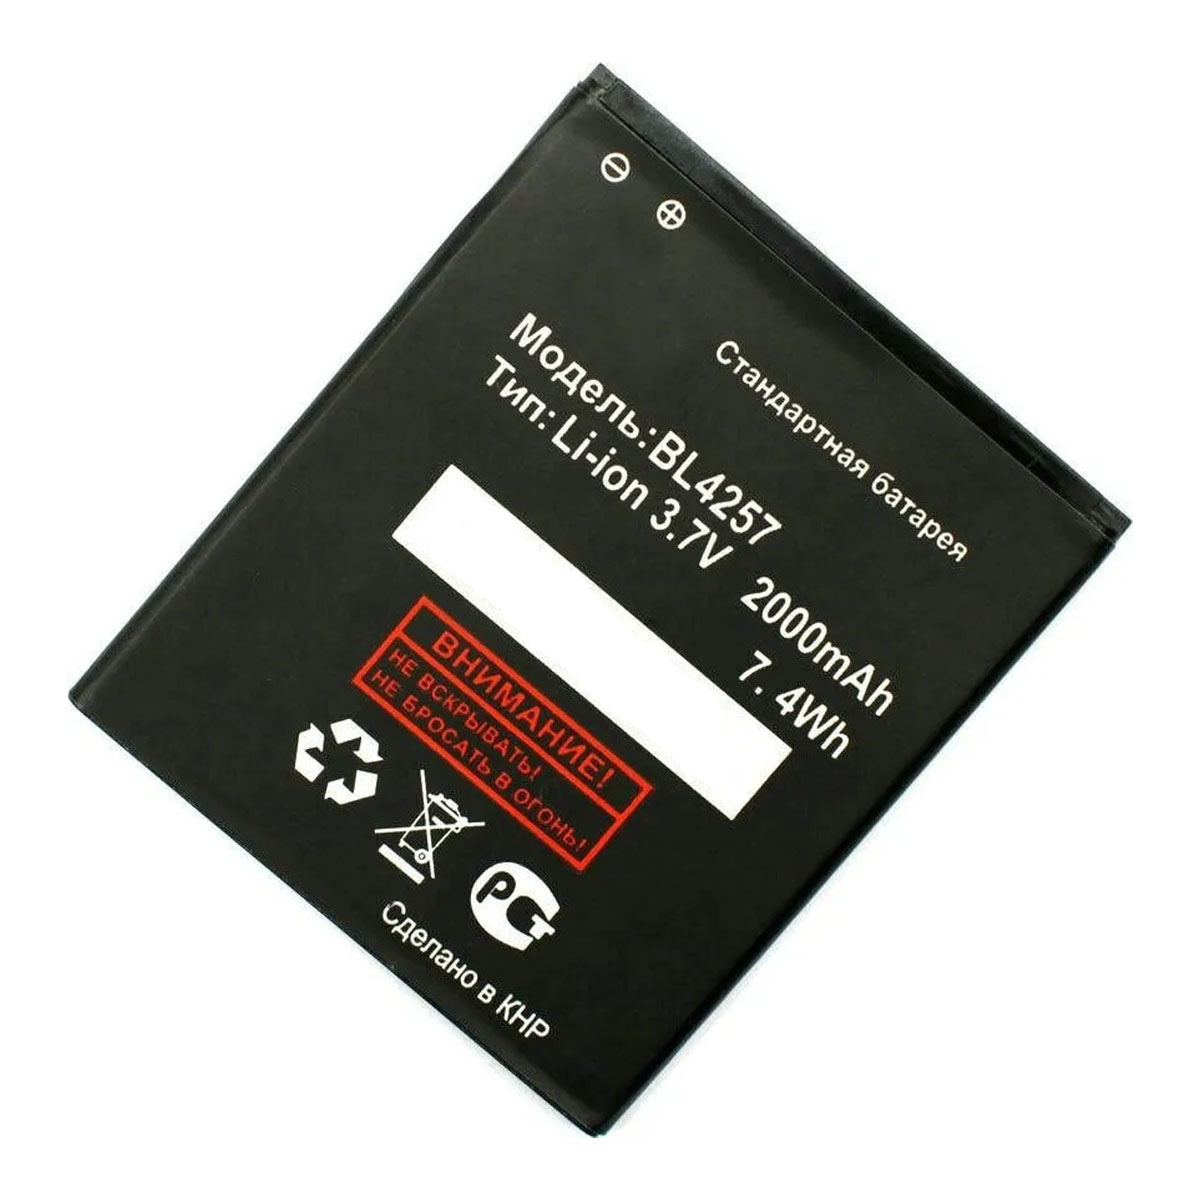 АКБ (Аккумулятор) BL4257 для телефонов FLY IQ451 Vista, Explay Fresh, Explay Vega, Explay X-tremer, X treme, 2000mAh, 7.4Wh, цвет черный